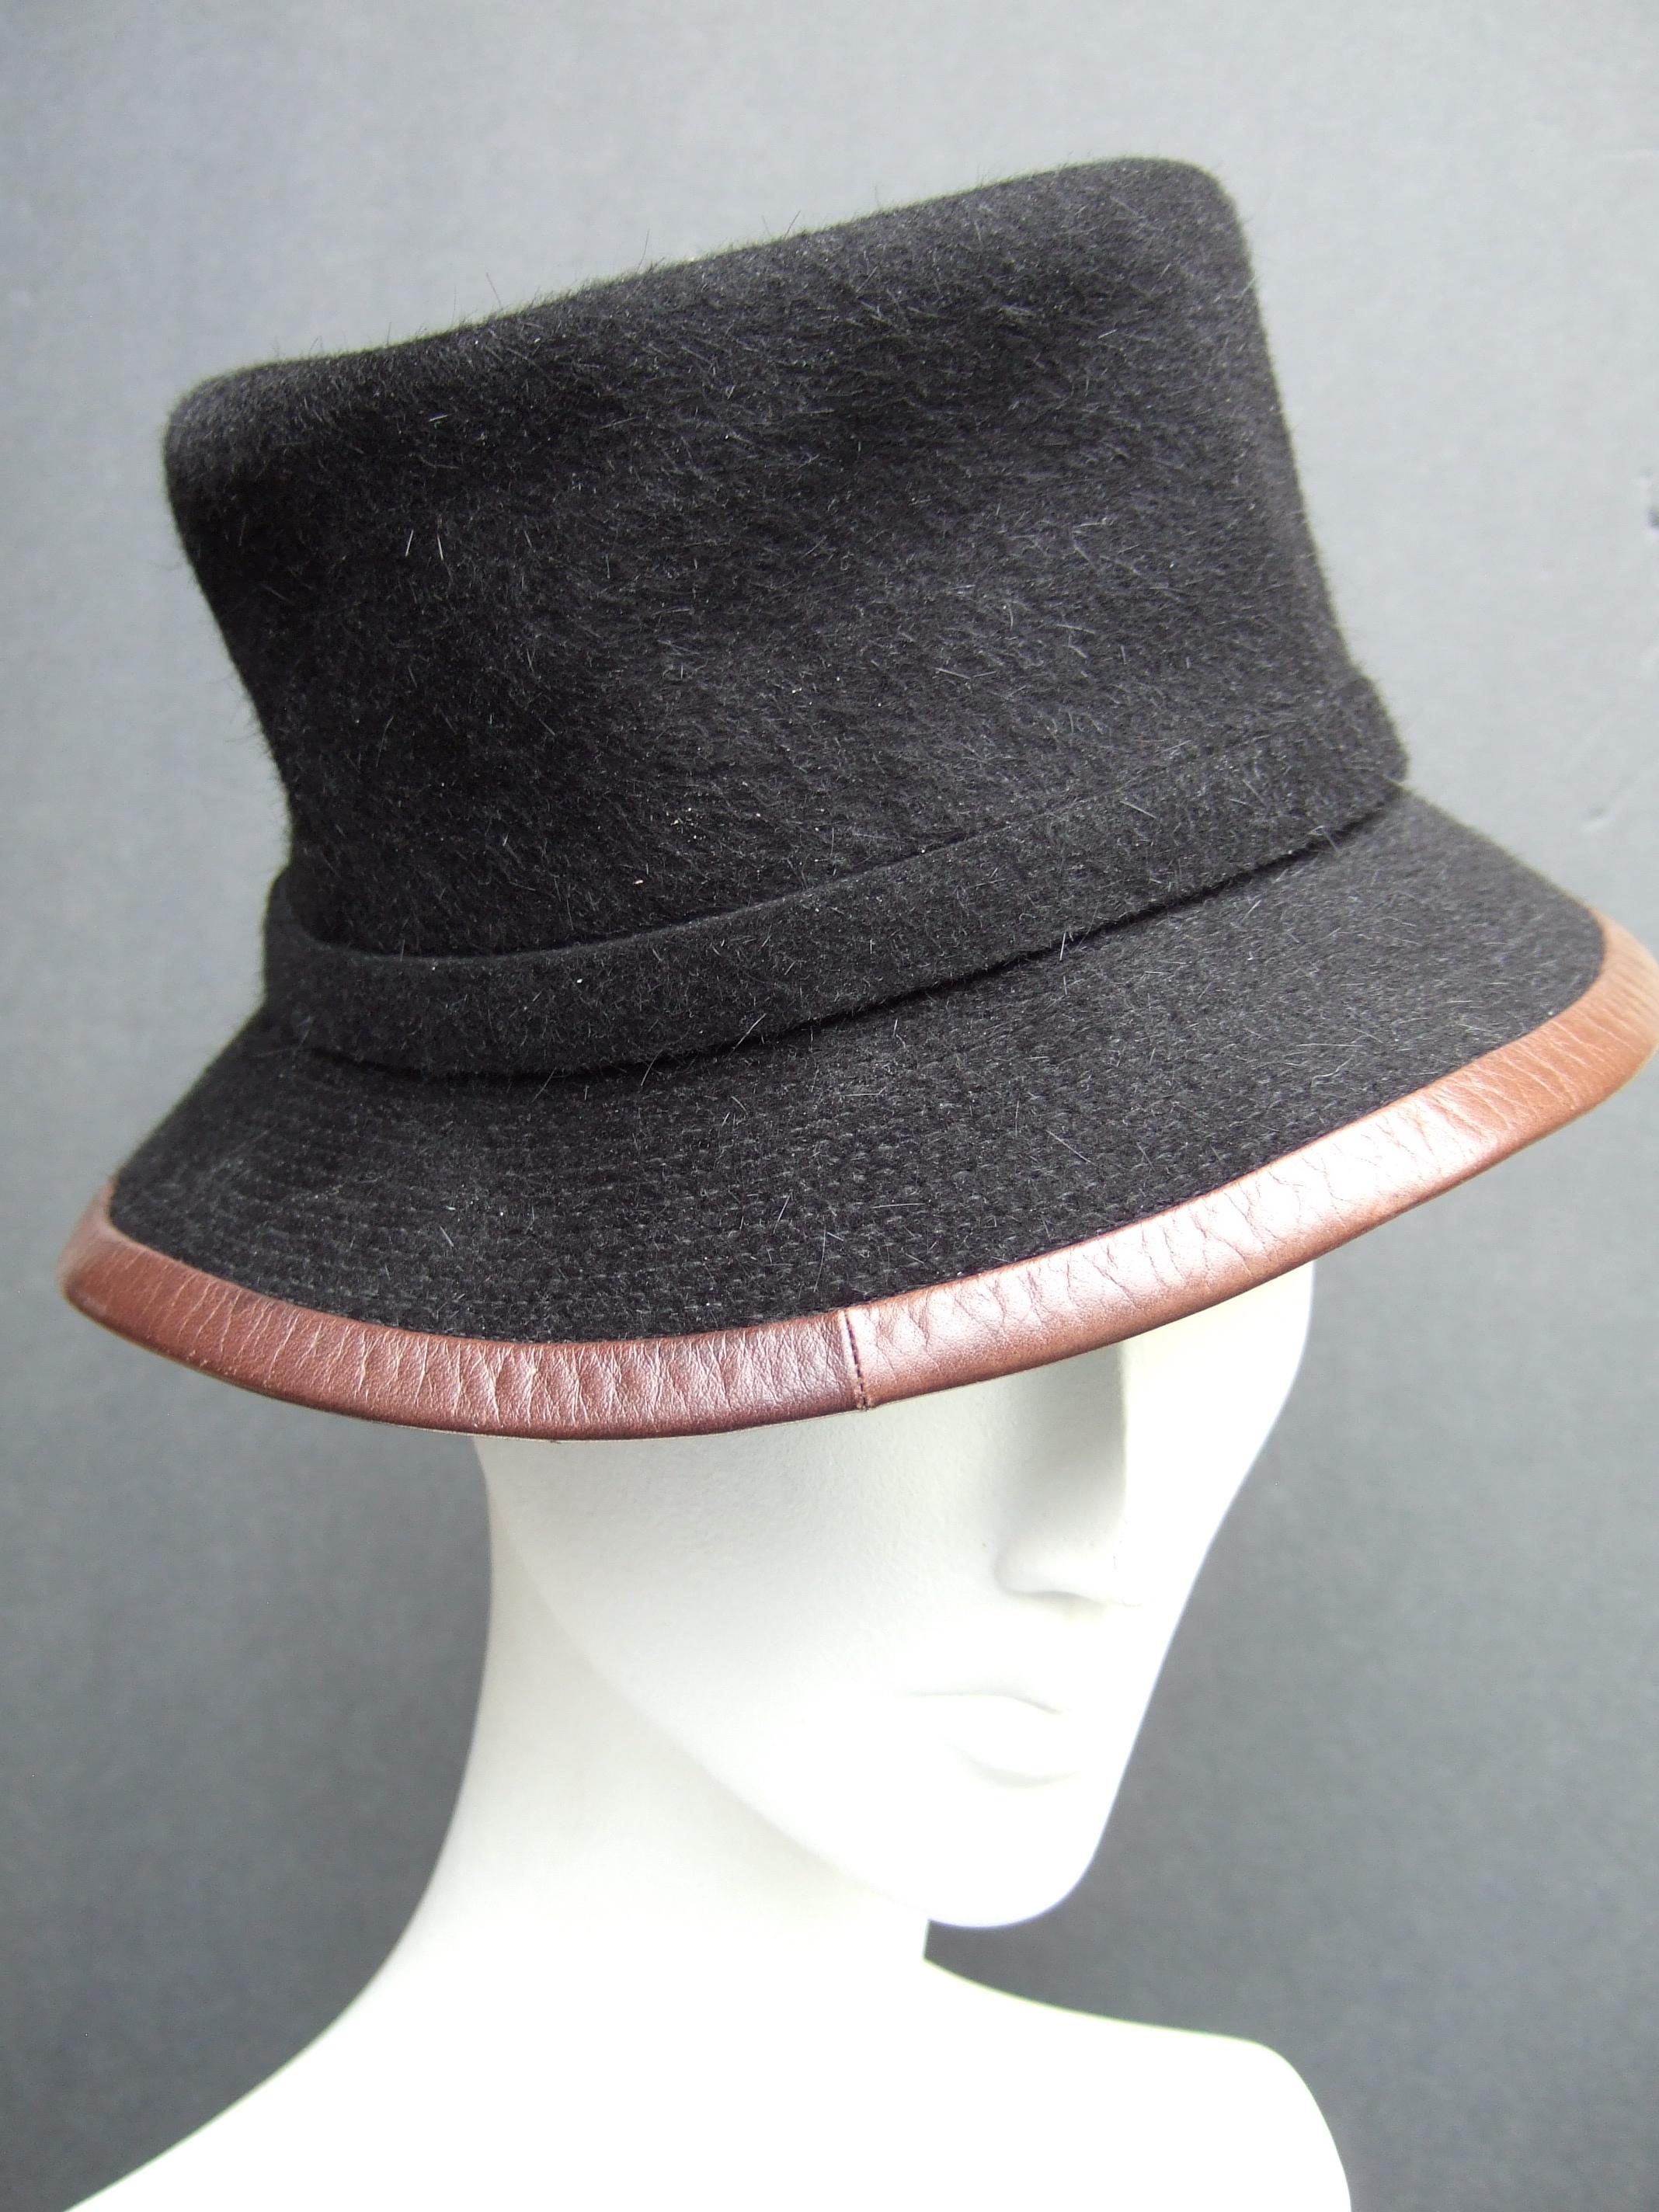 Hermes Paris Black Wool Leather Trim Hat Labeled Motsch Chapeaux Pour Hermes  For Sale 4